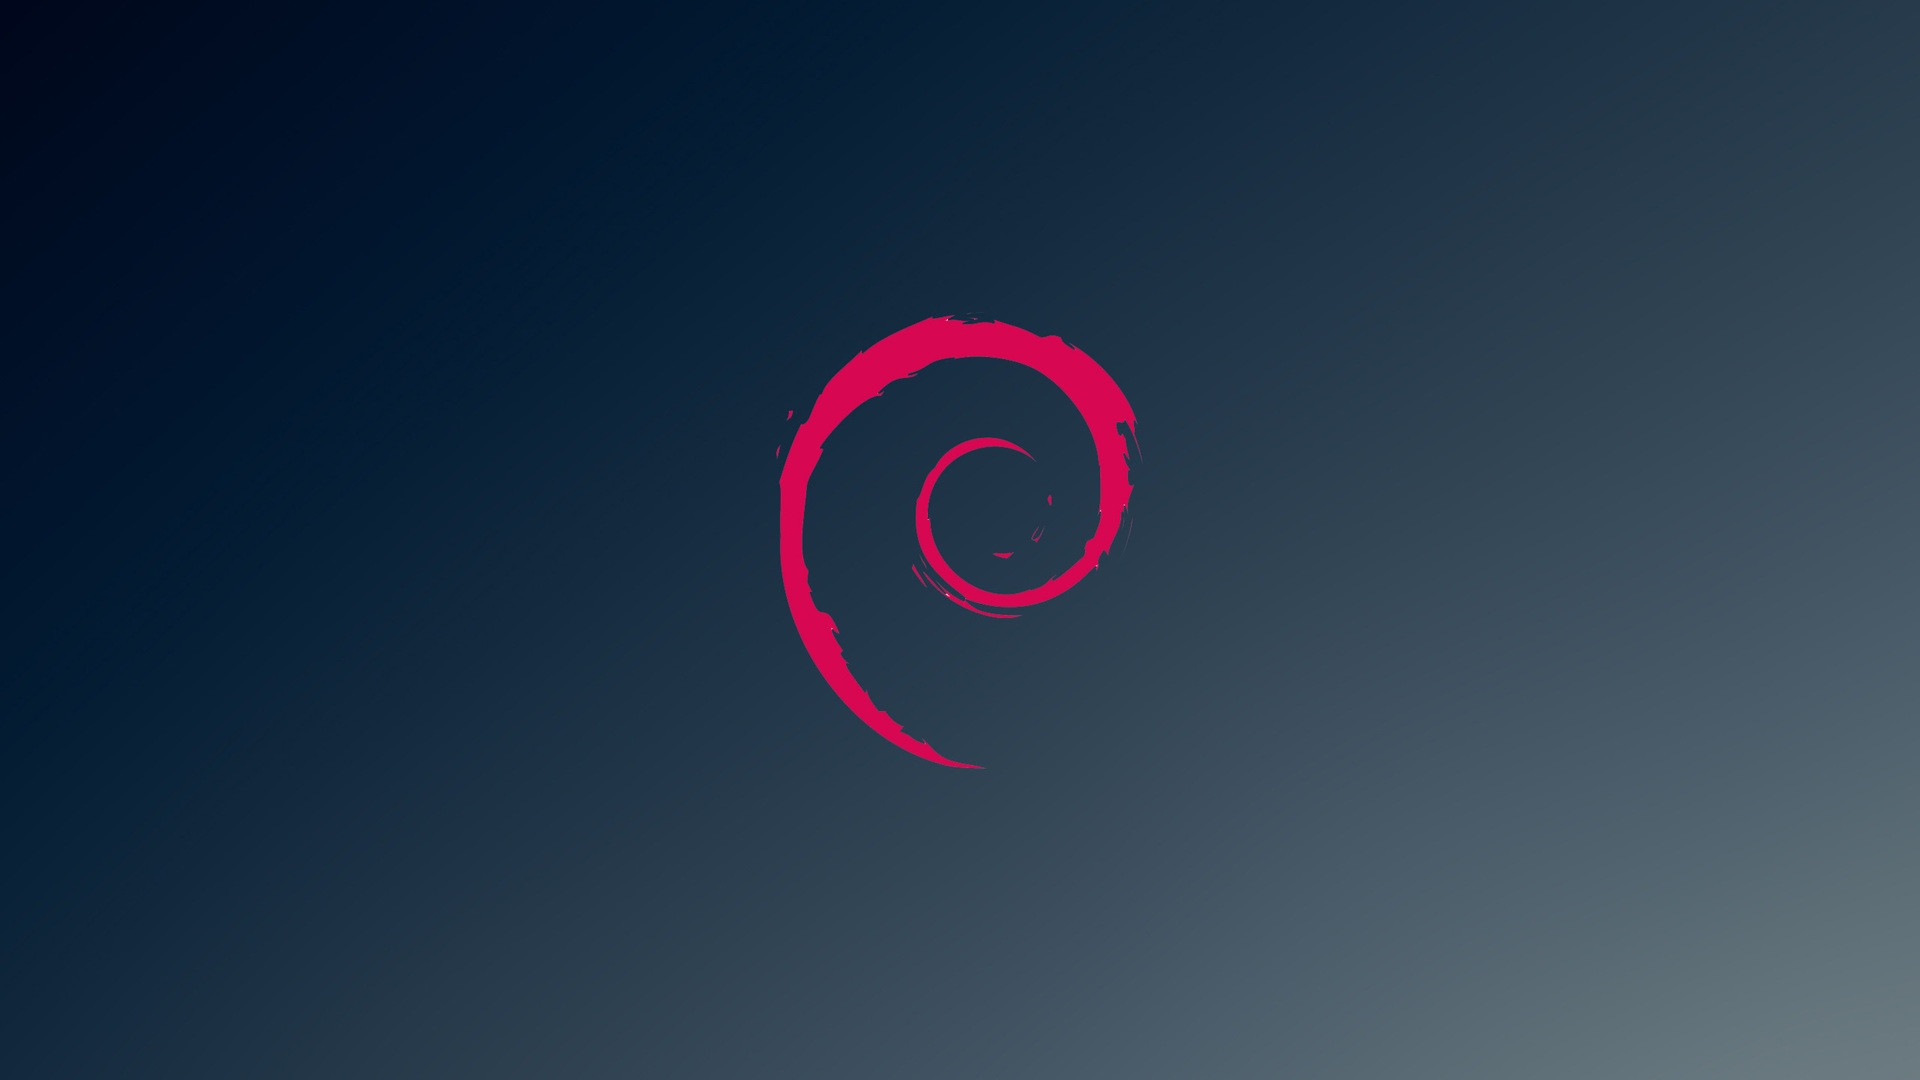 Debian GNU/Linux 11.1 “Bullseye” lançado com 24 atualizações de segurança e 75 correções de bug